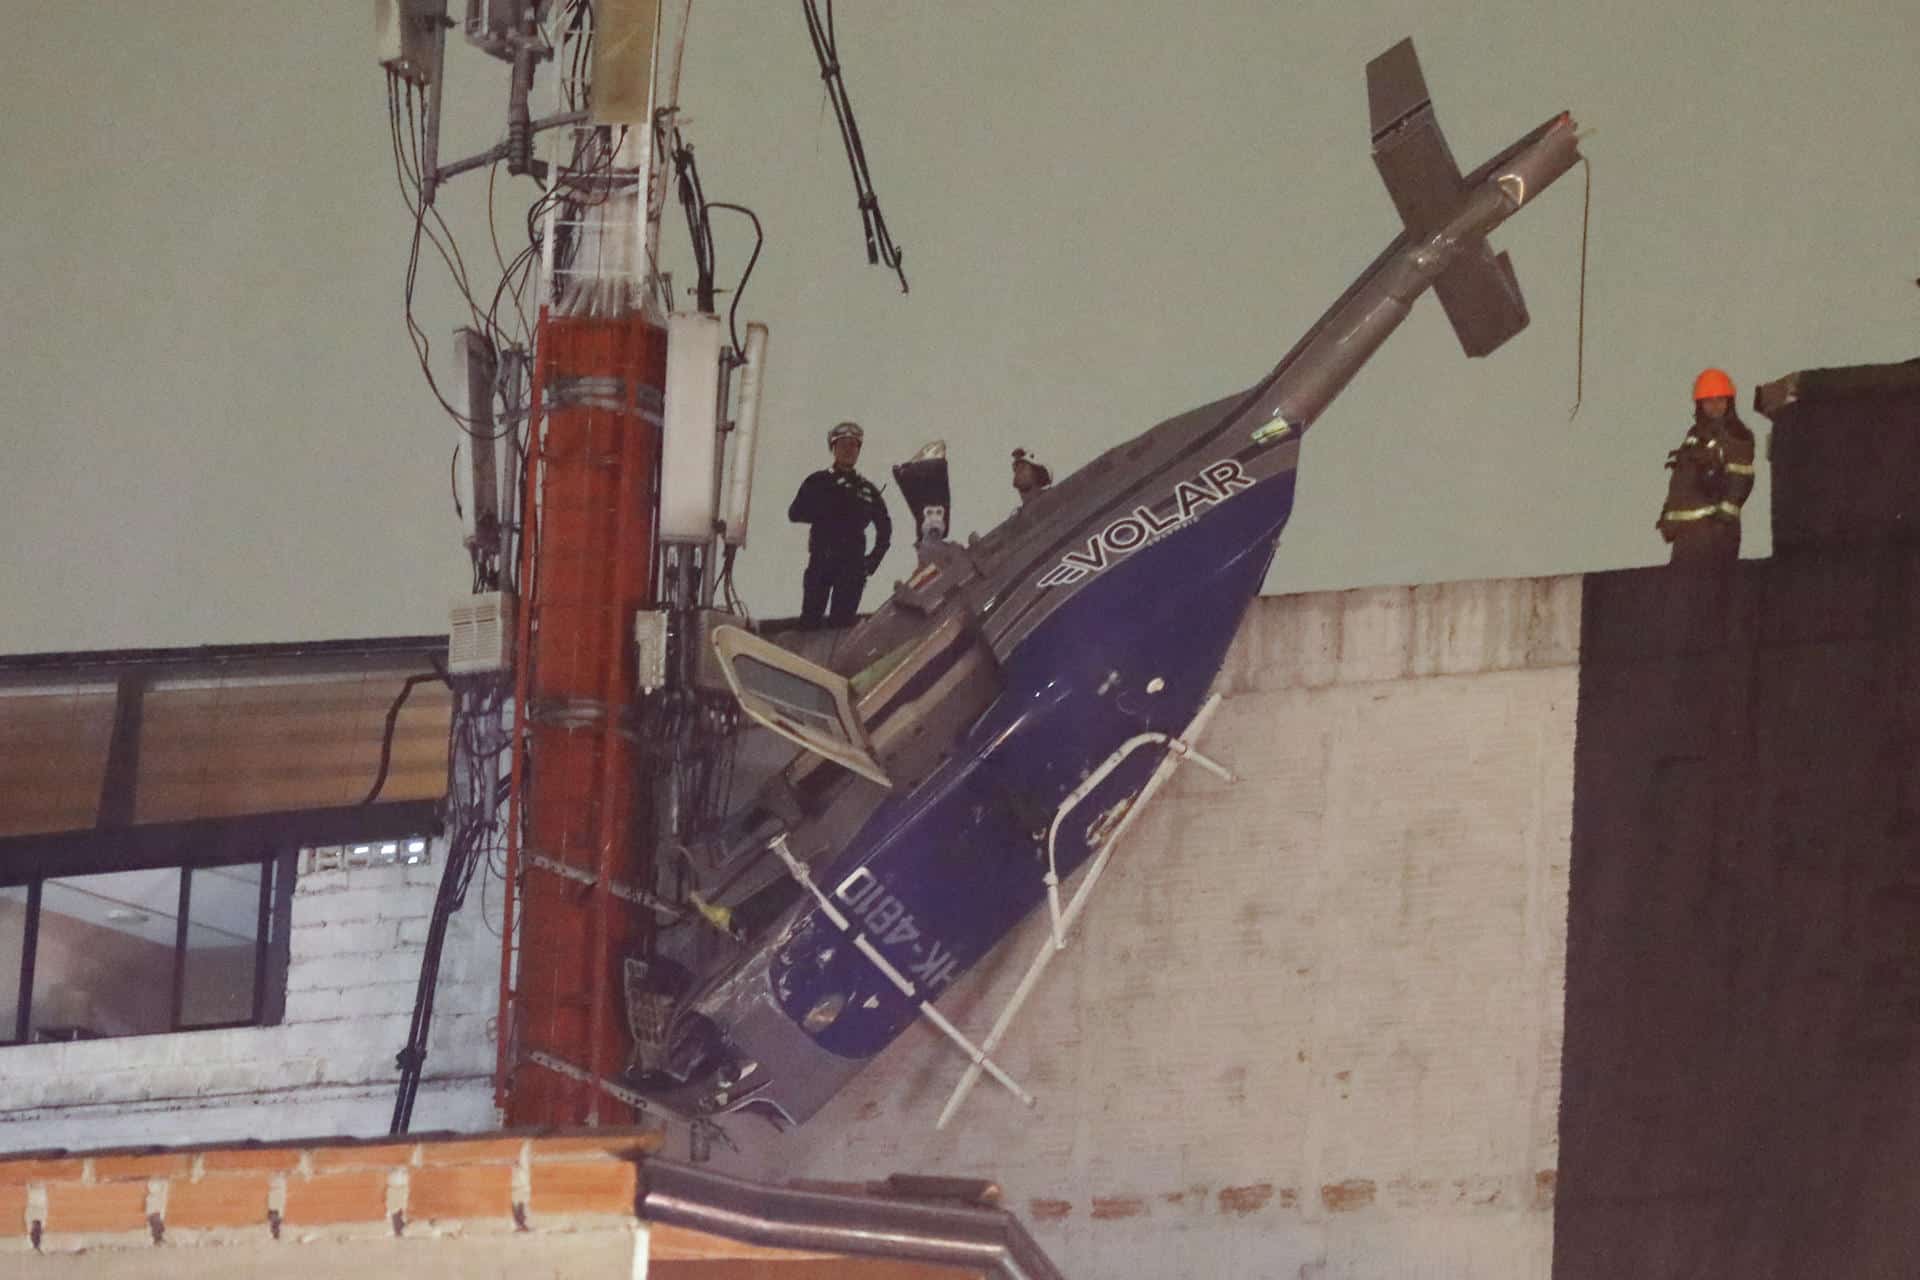 Detalles del accidente de helicóptero que cayó sobre edificio en Medellín